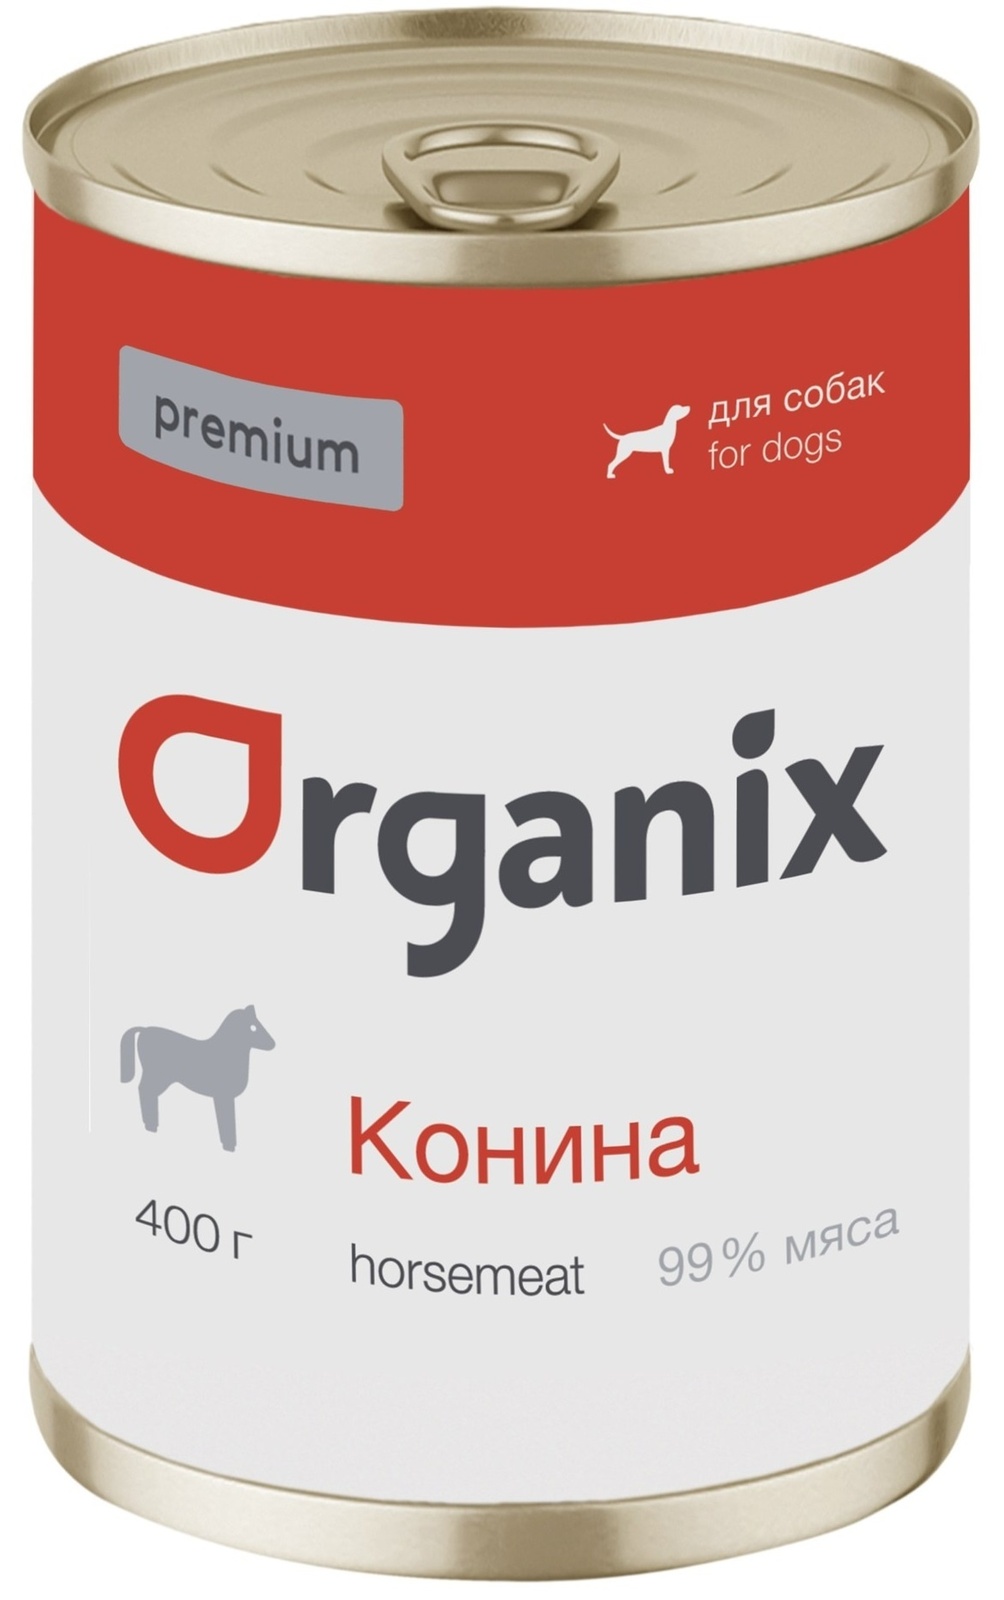 Organix консервы Organix монобелковые премиум консервы для собак, с кониной (100 г) organix консервы organix консервы для собак ягненок с рубцом и морковью 100 г